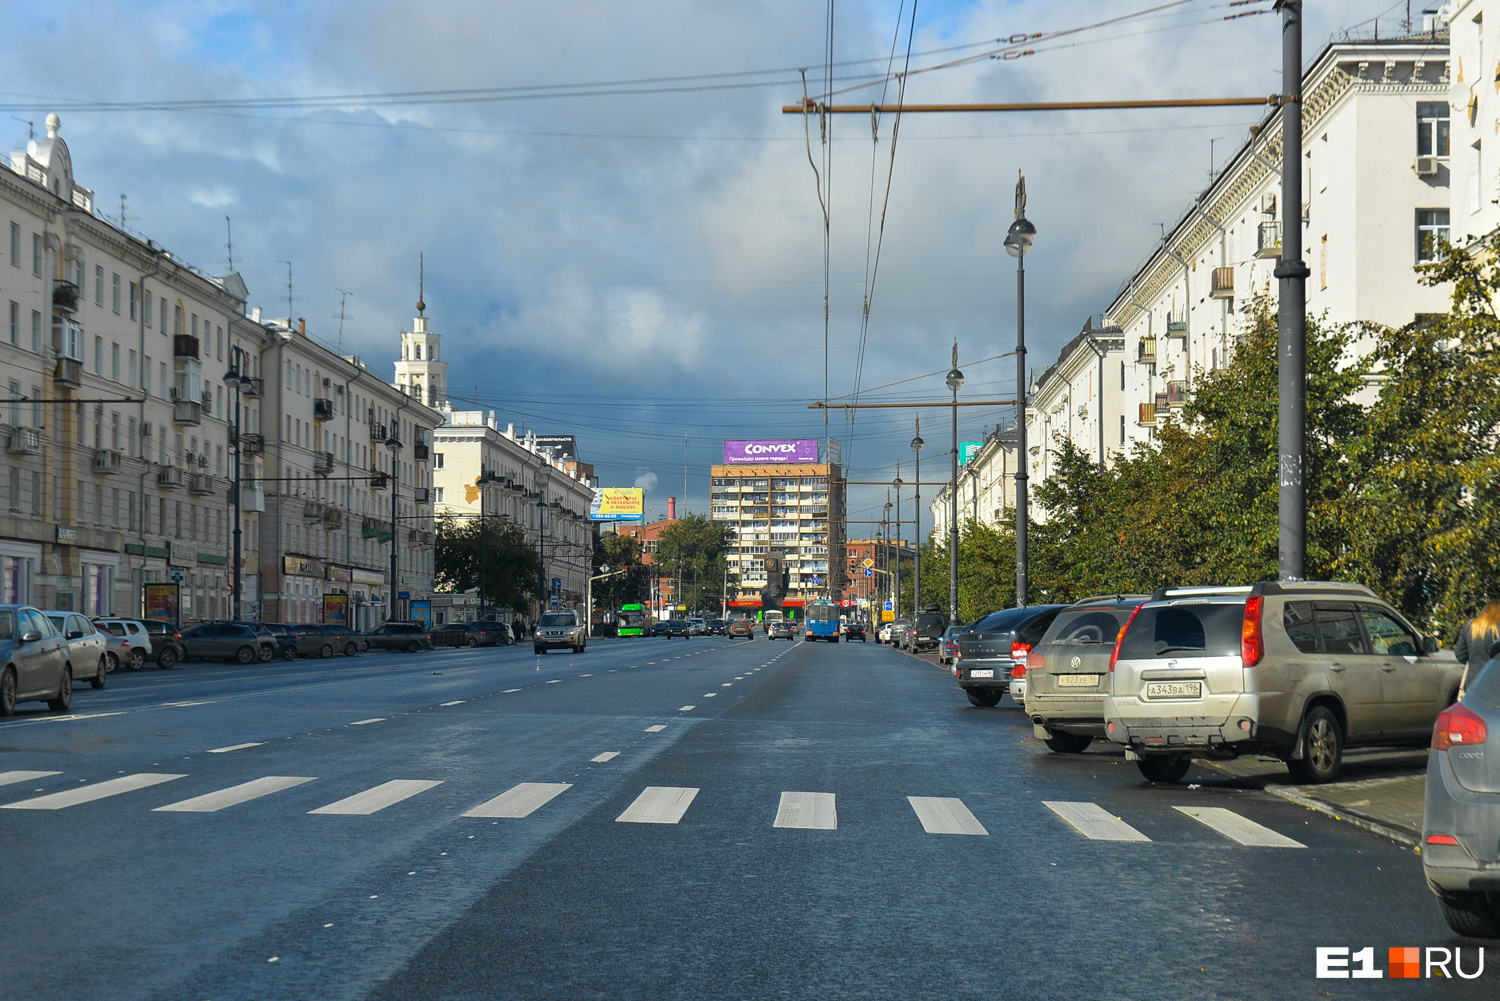 Застройка улицы Свердлова — чудесный пример сталинского ампира